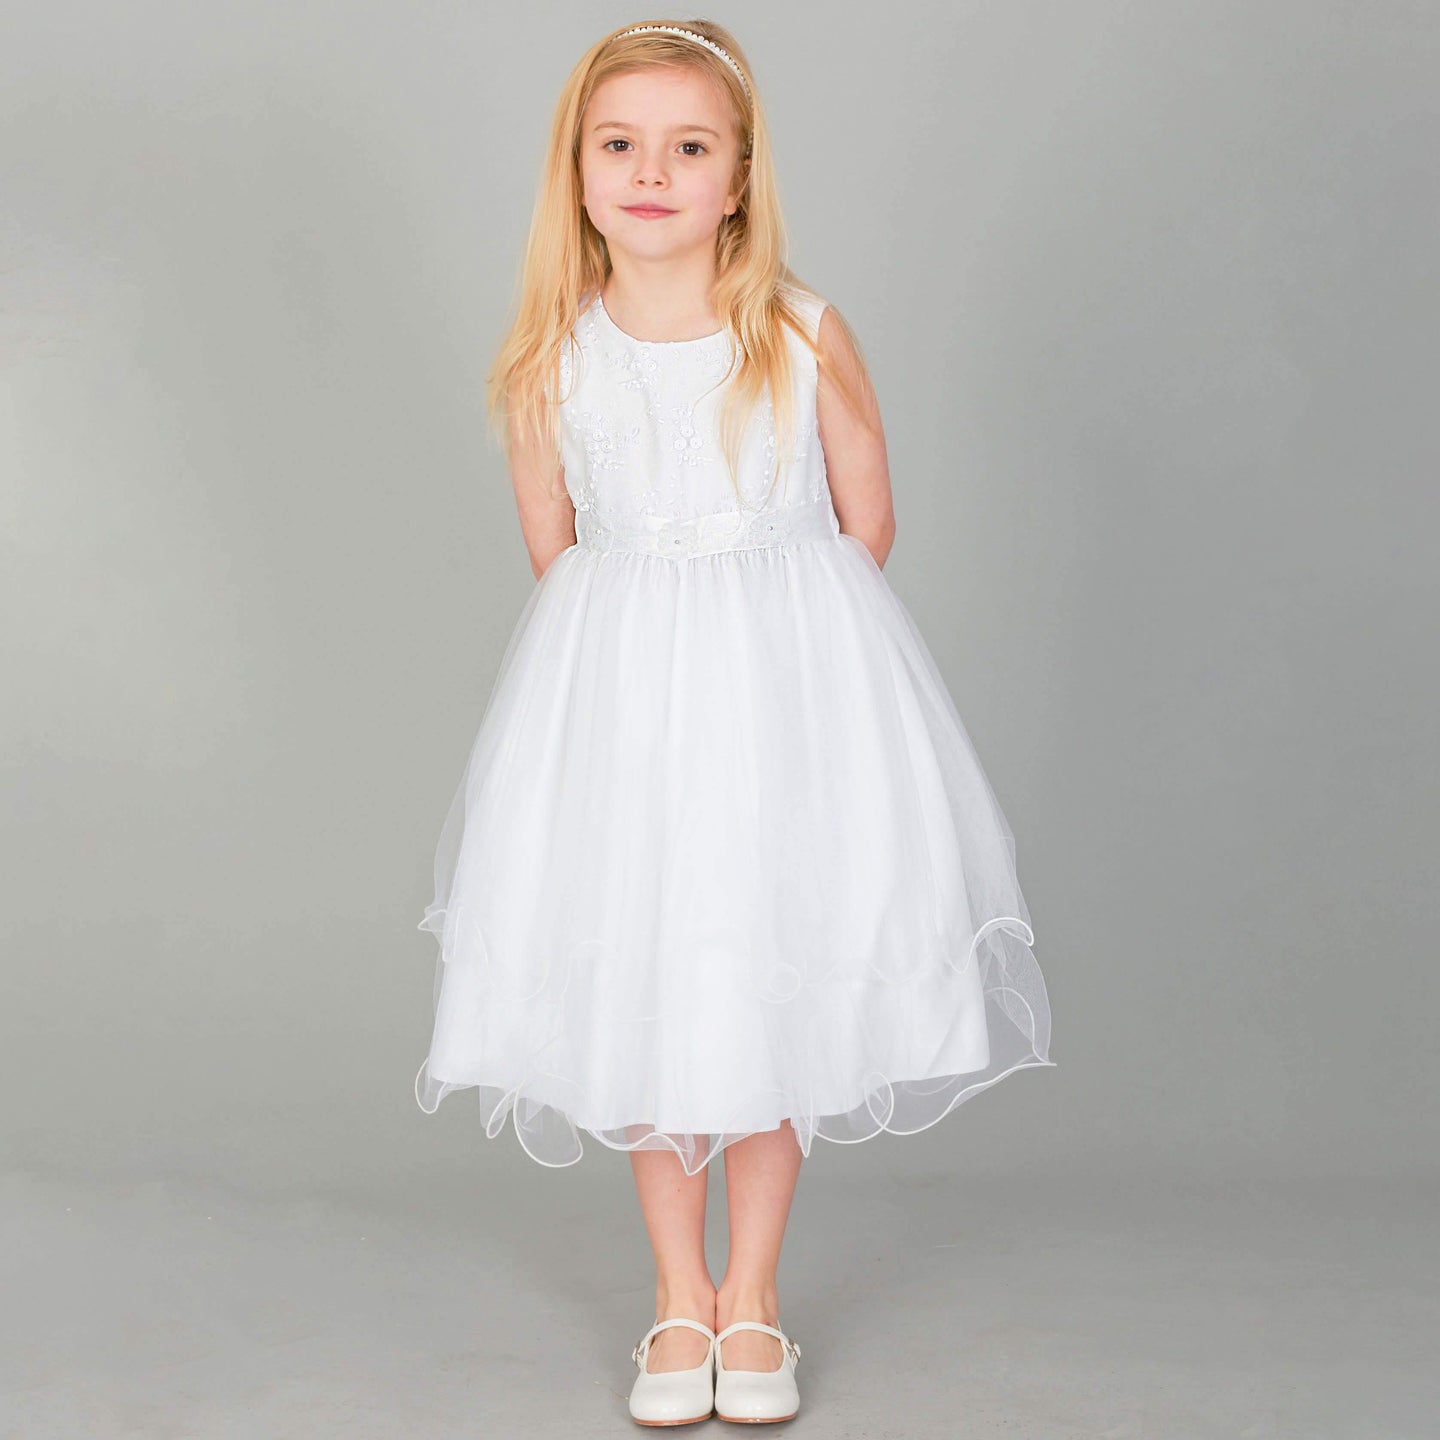 Girl wearing white Tiffany Flower Girl dress